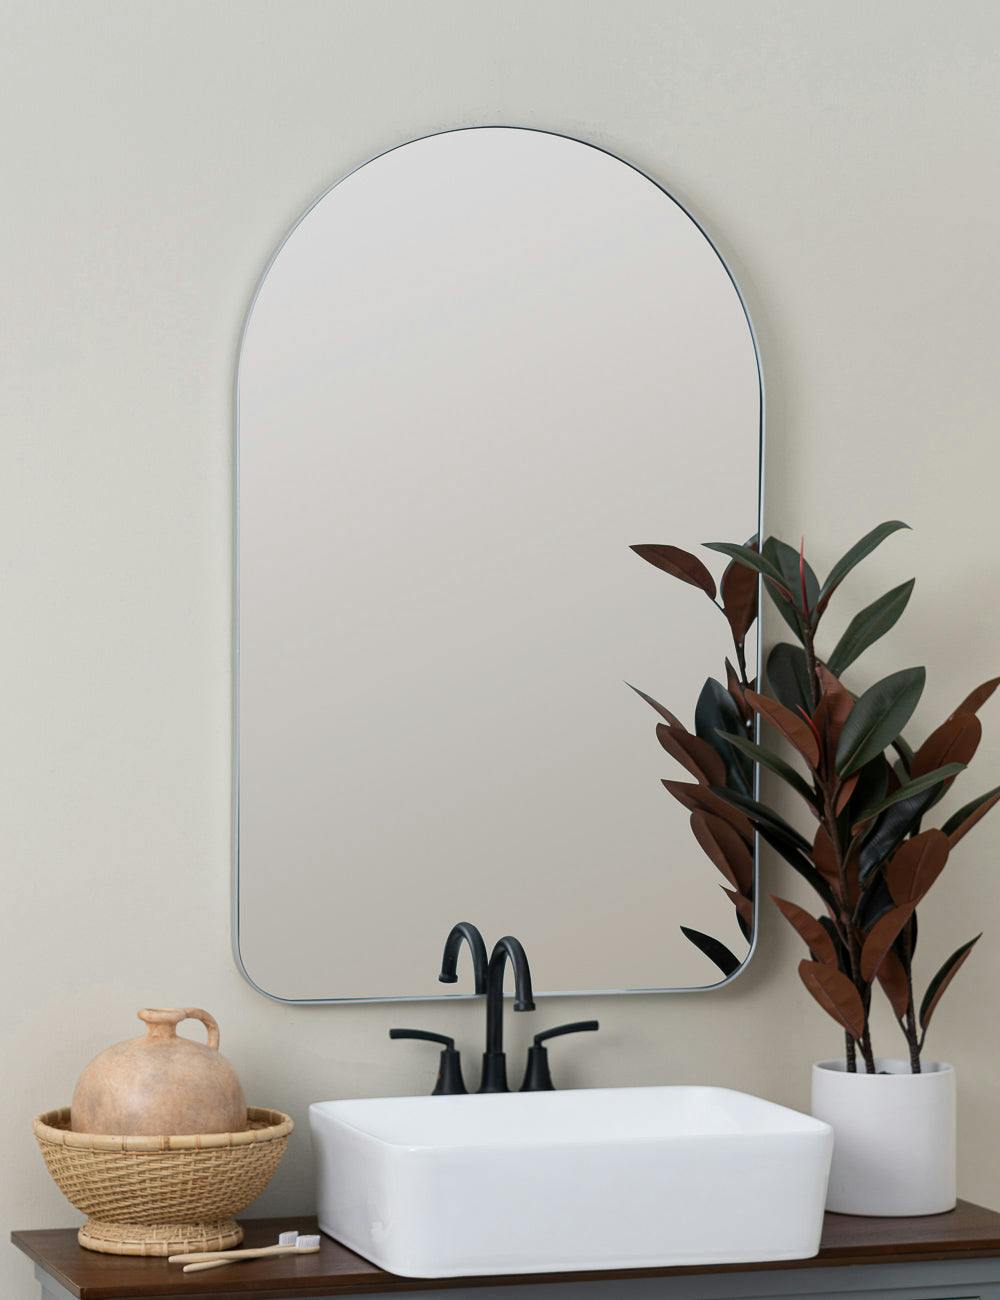 Elegant Gerrard Arched Silver Wall Mirror, 38x24 Inches